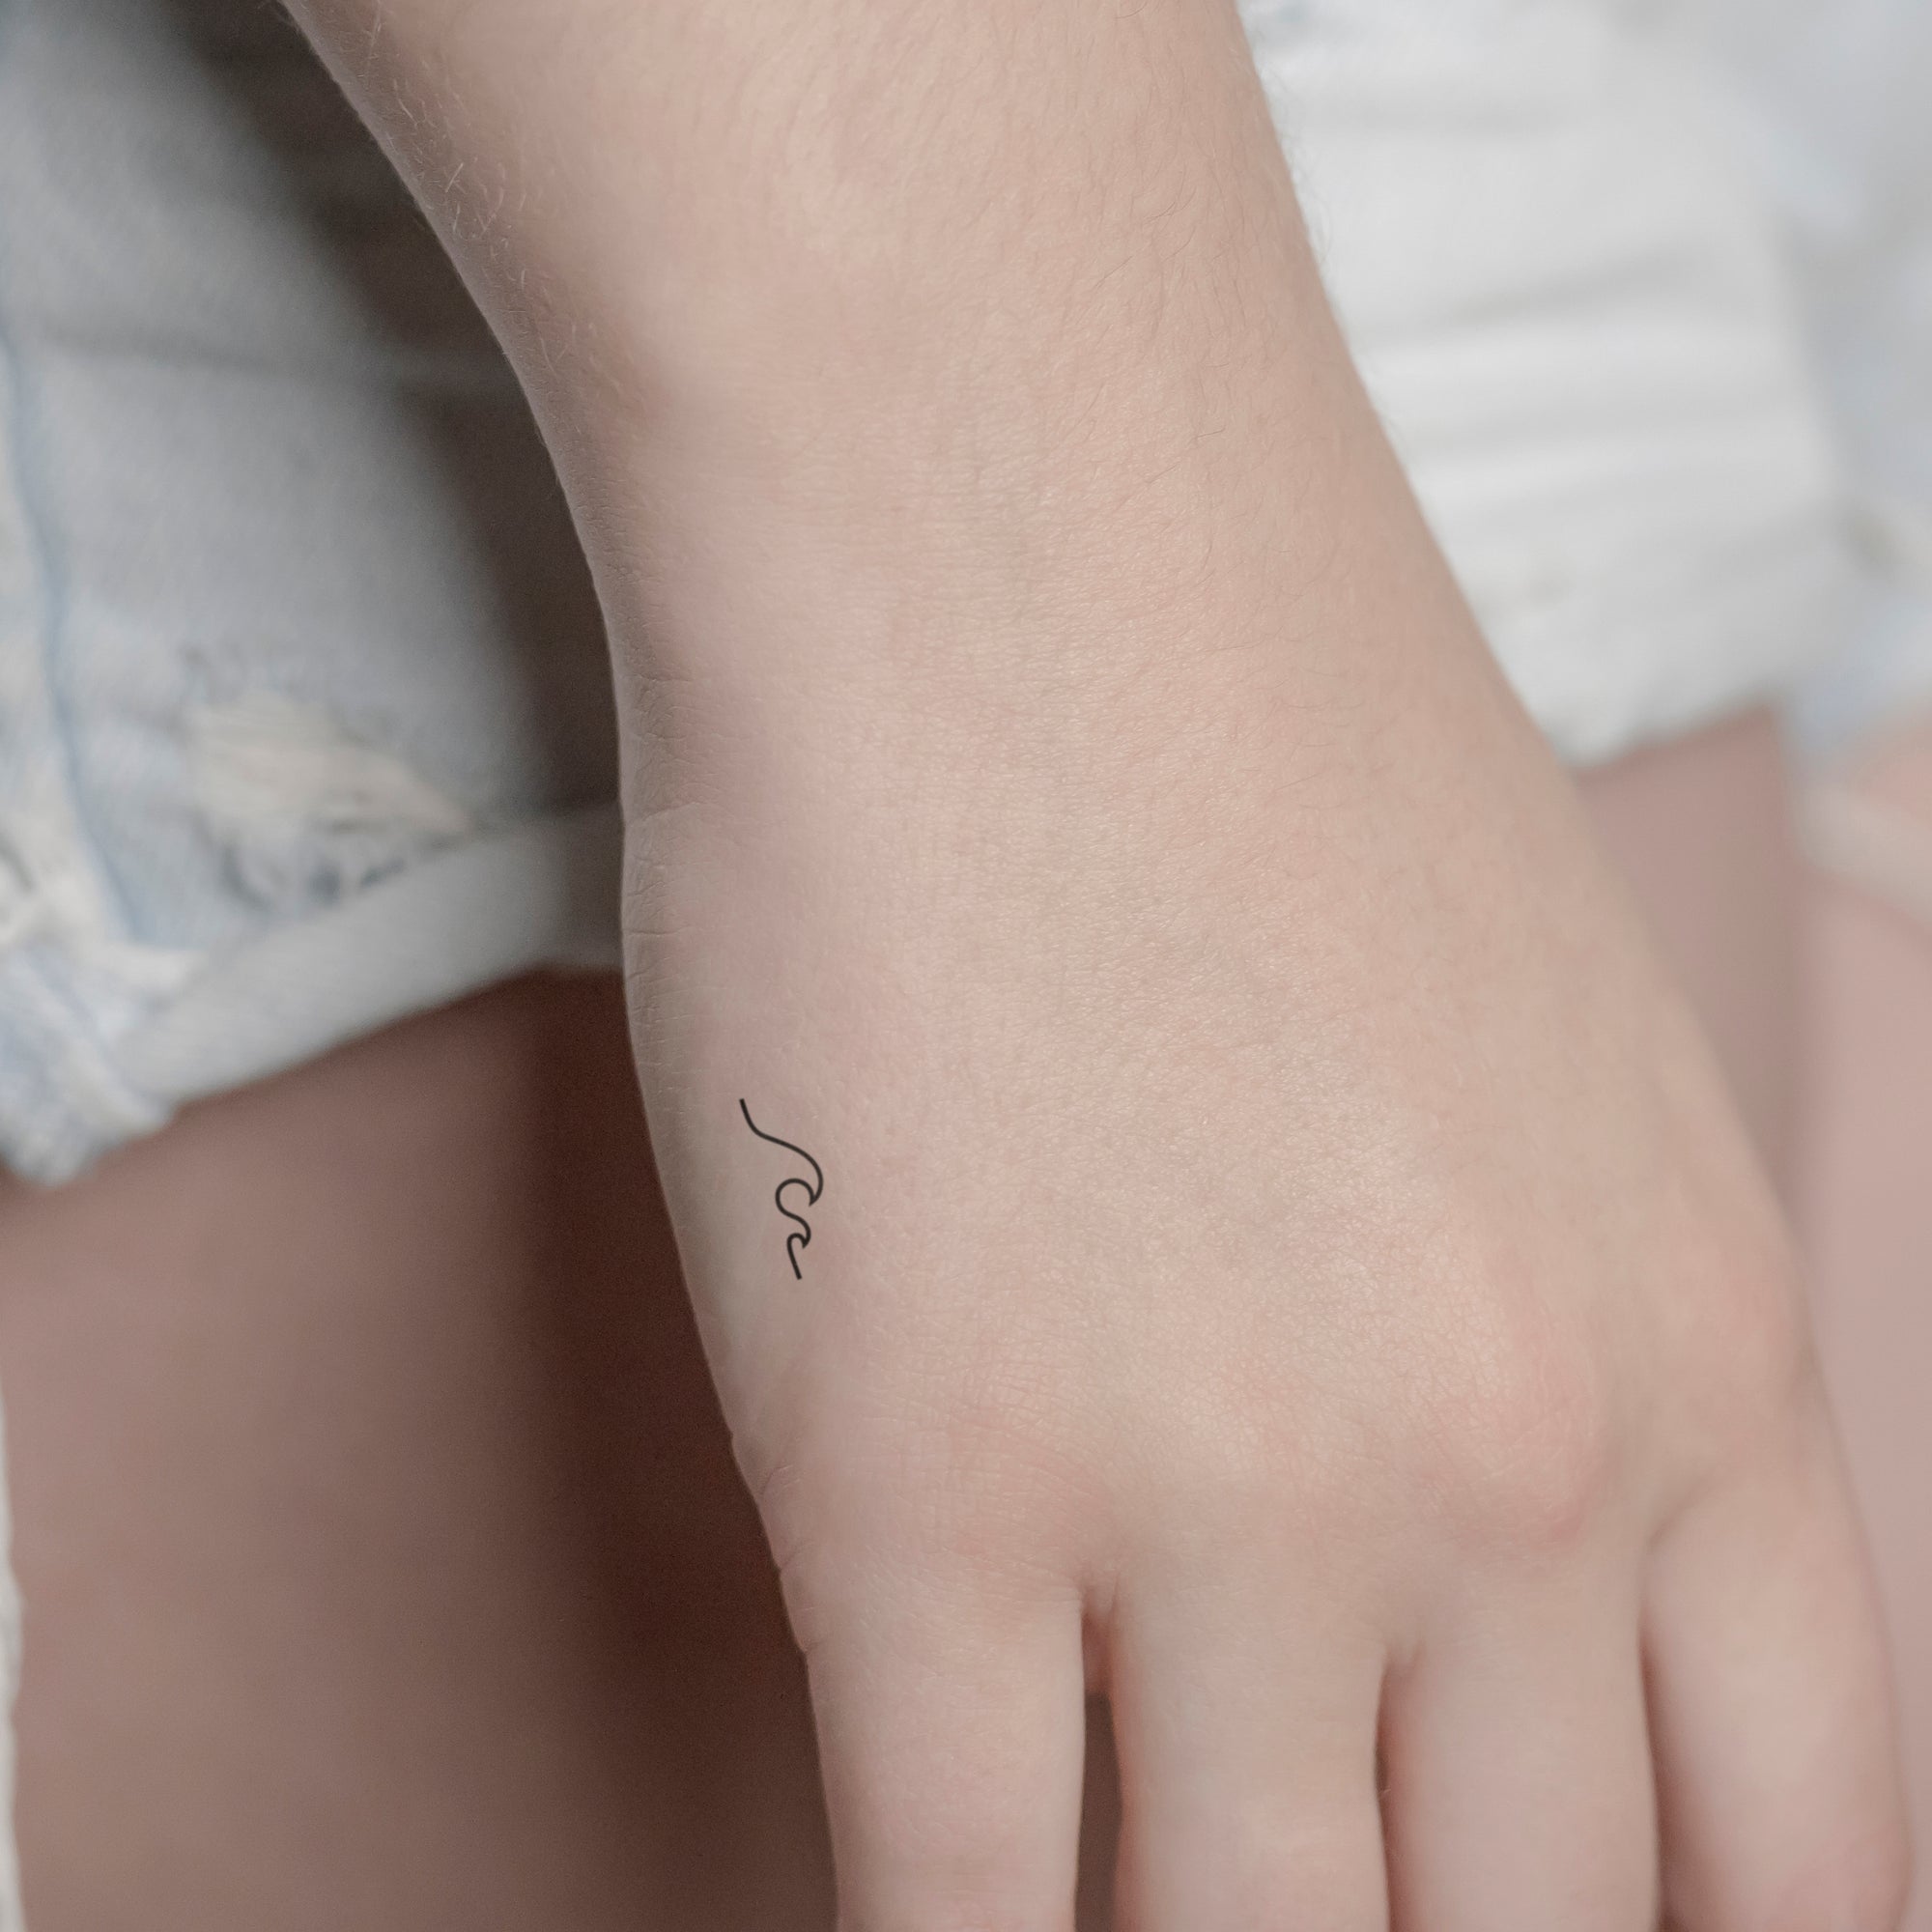 Kleine Welle Tattoo von minink, der Marke für temporäre Tattoos.